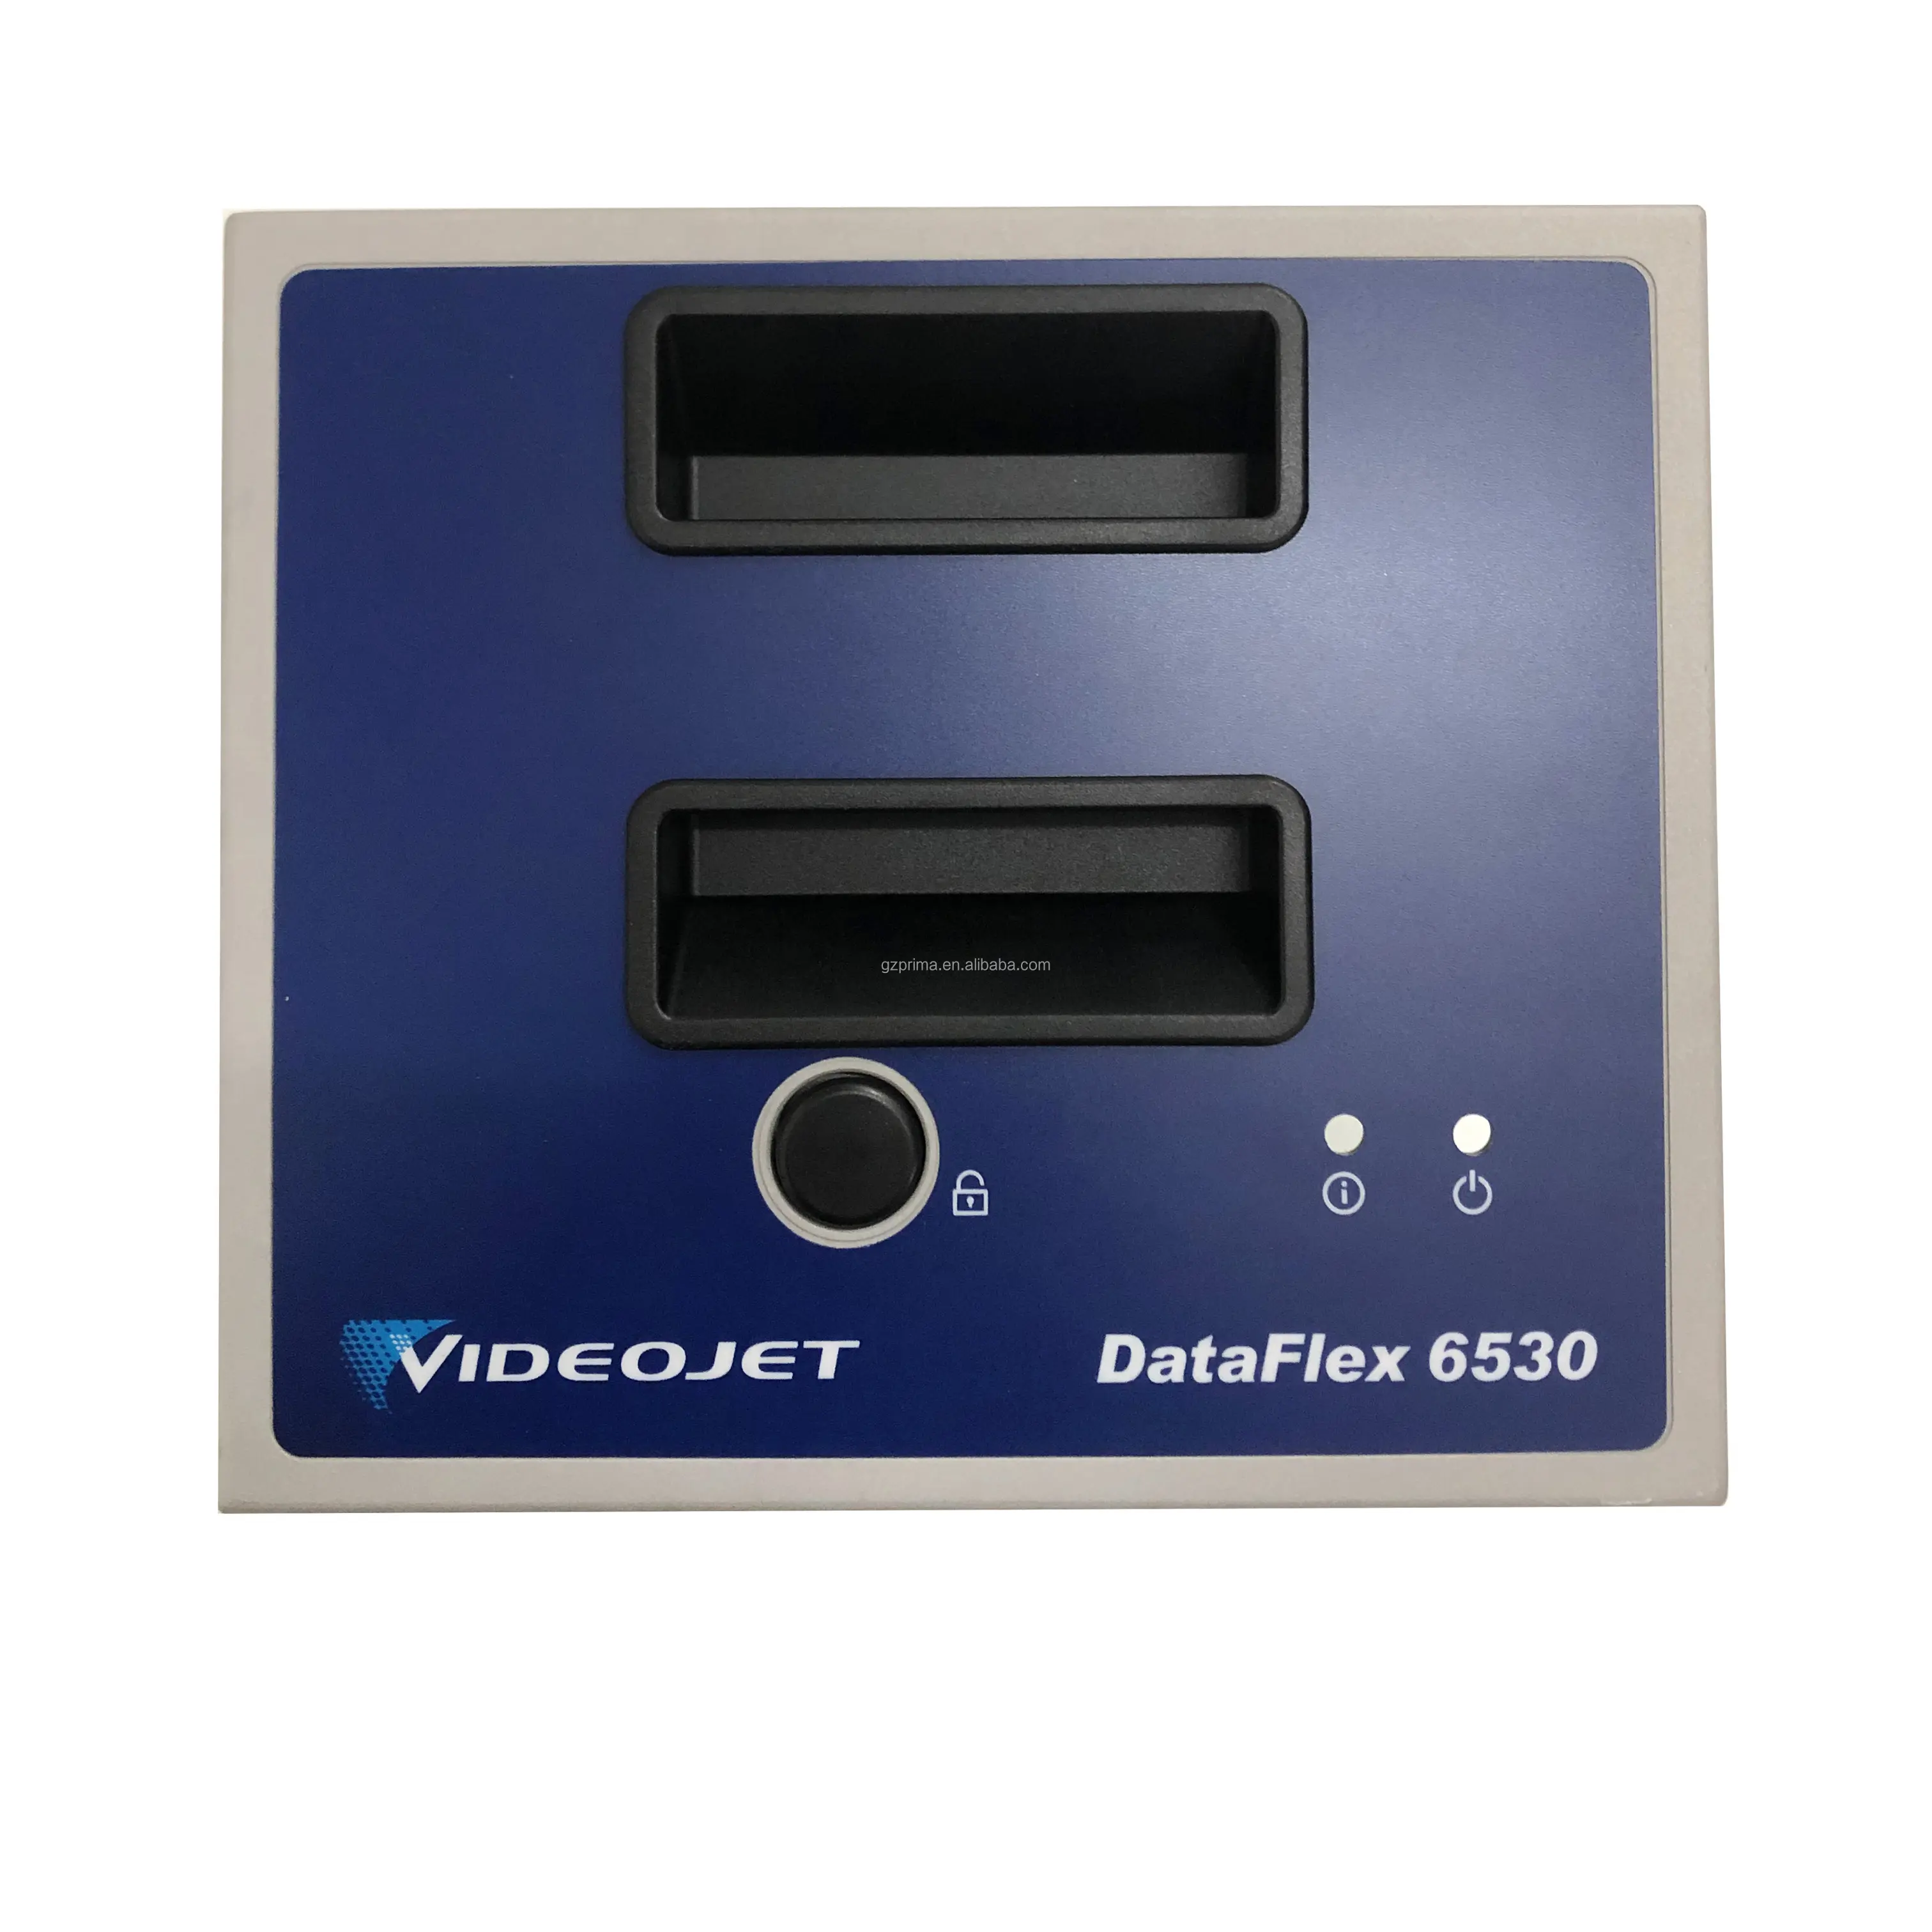 Cassetta DataFlex TTO originale Videojet 408682 utilizzata su stampante a trasferimento termico industriale da 6530 107mm